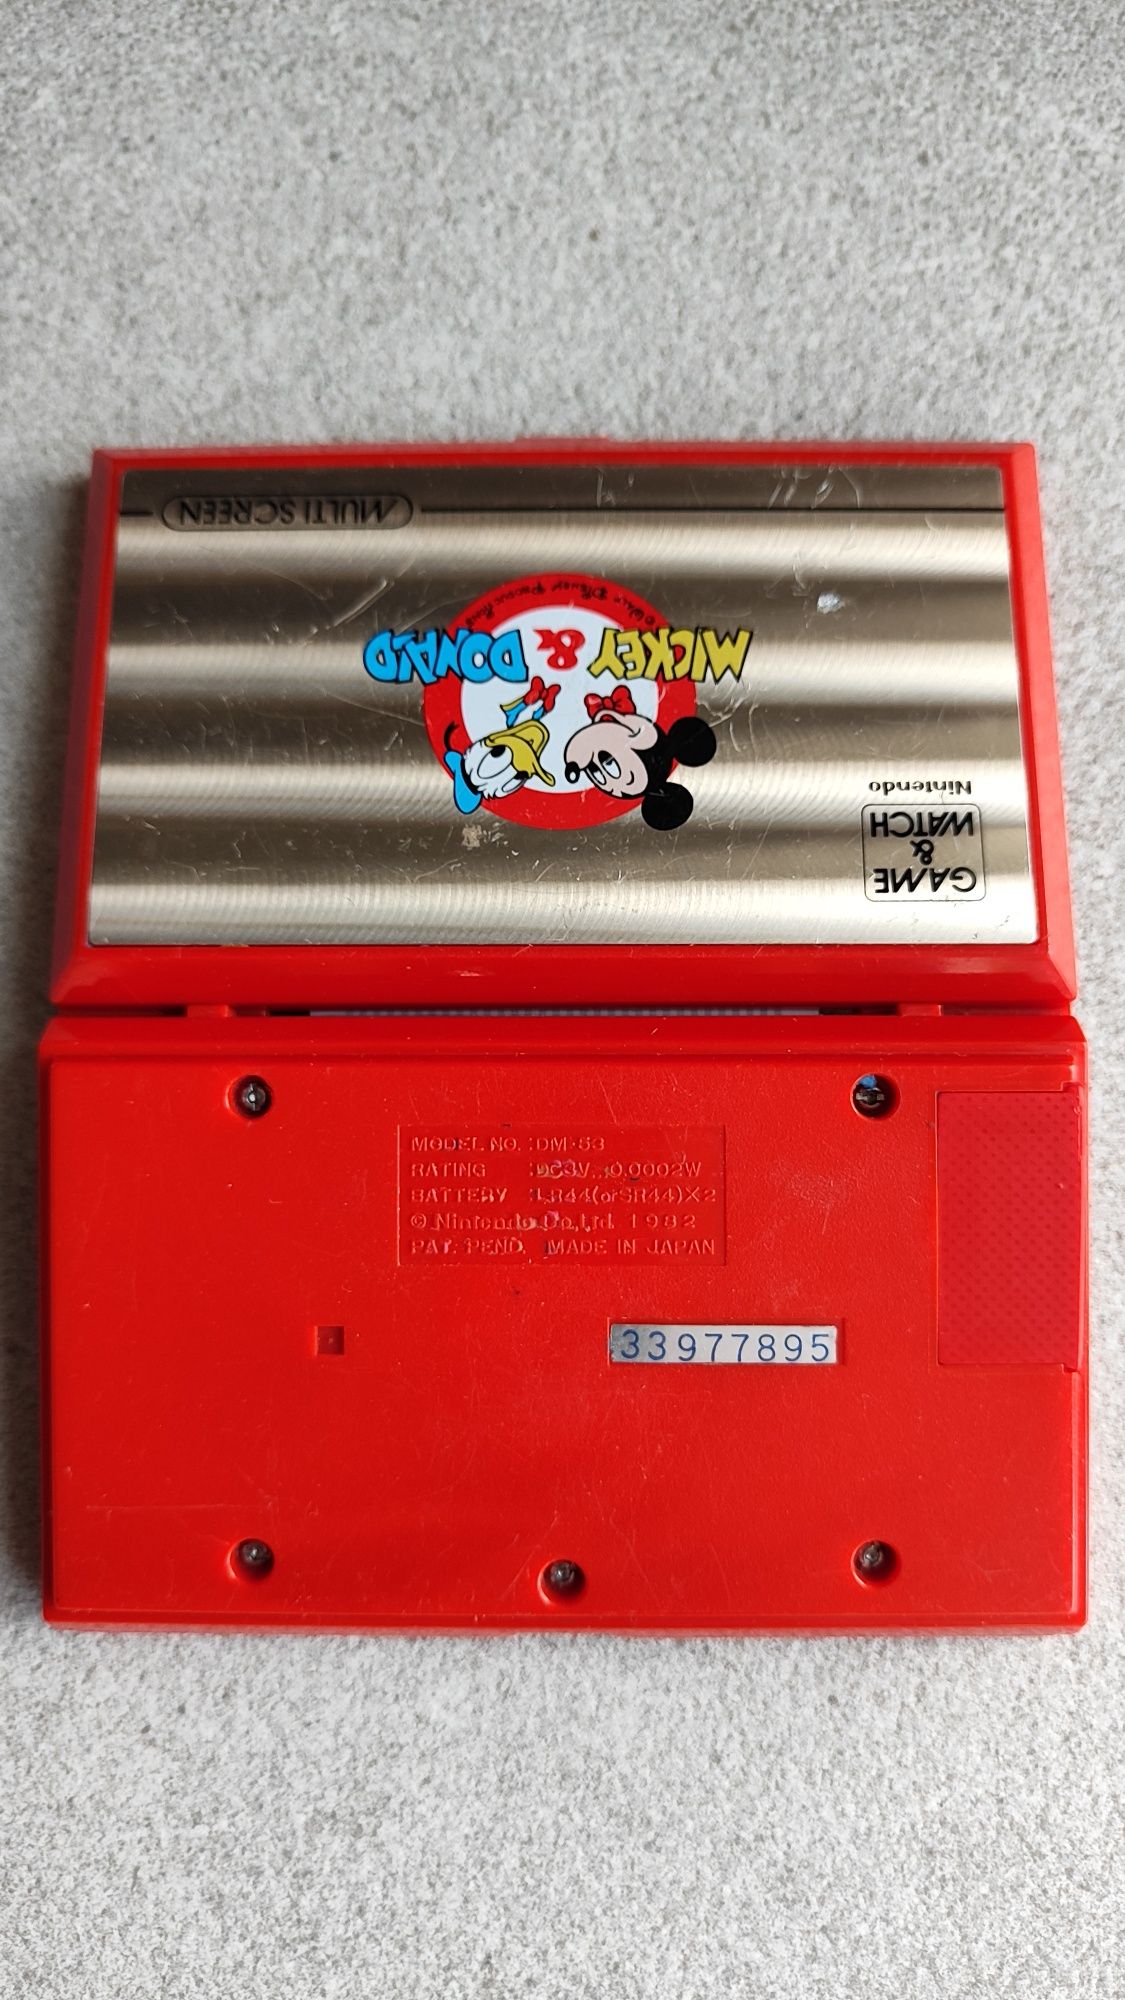 Nintendo Game Watch Mickey и Donald ретро игровая приставка DM-53